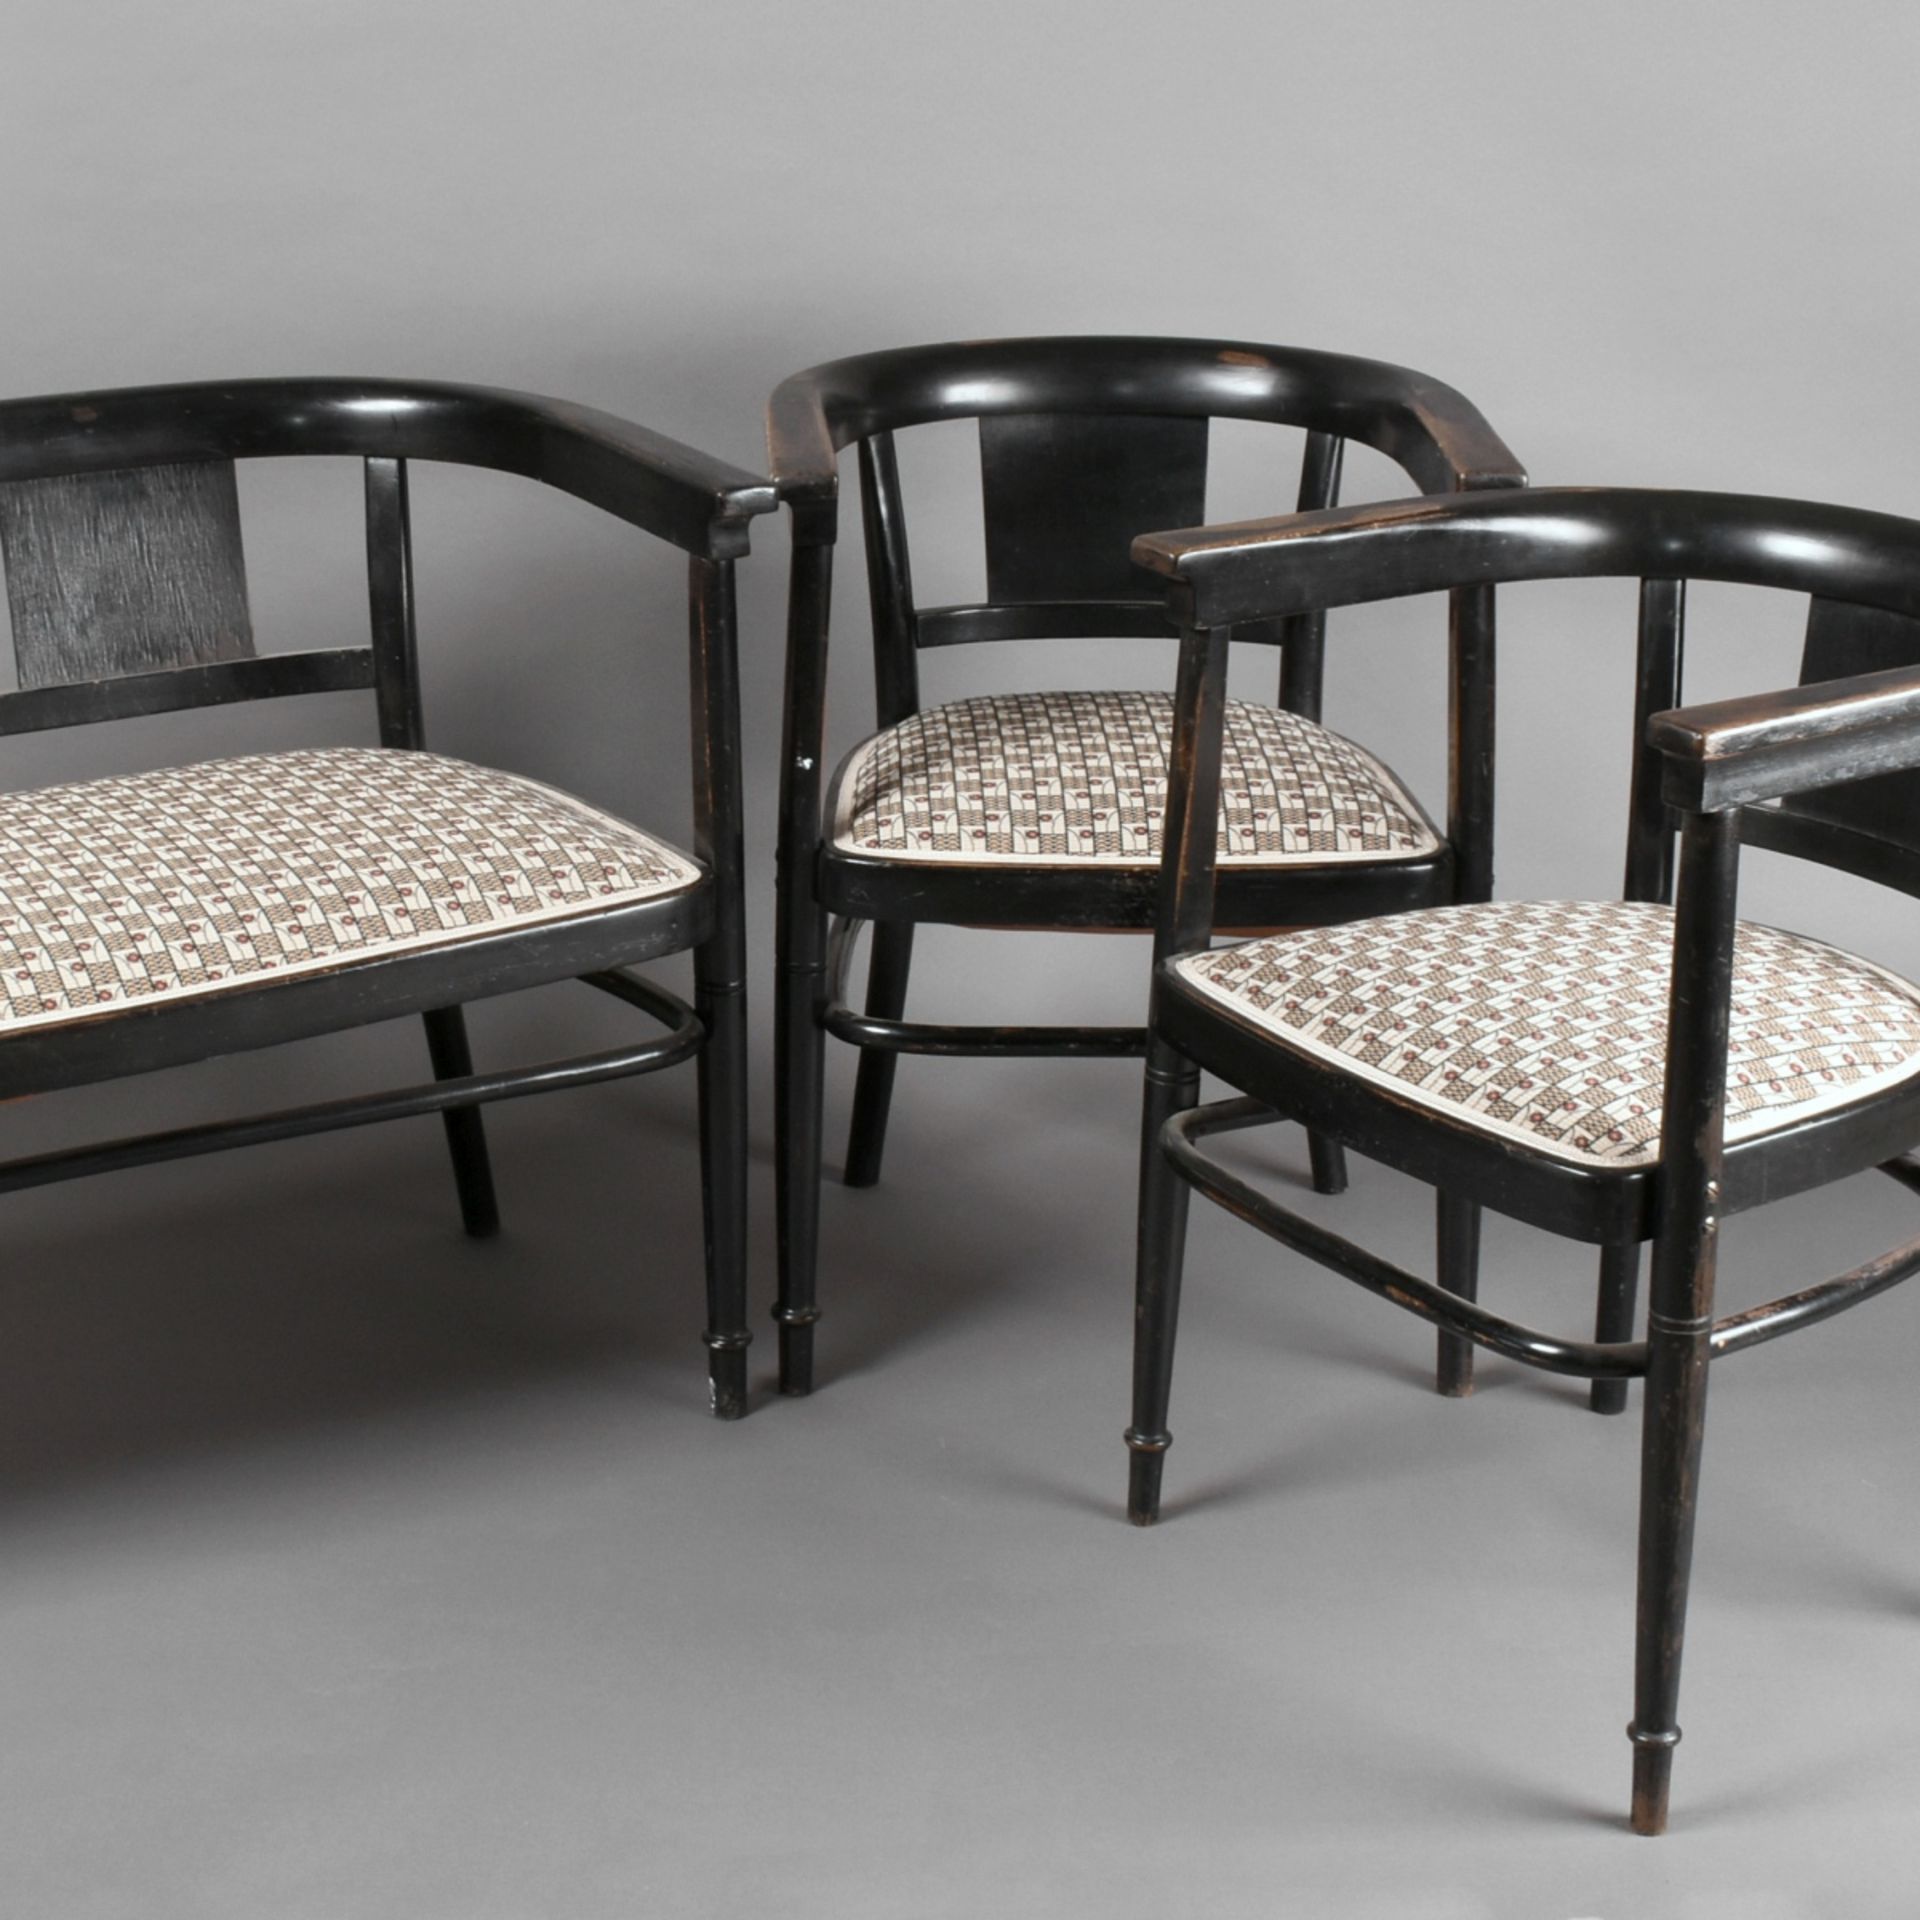 Jugendstil-Sitzgarnitur im Stil der Wiener Moderne, bestehend aus Sitzbank und 2 Armlehnstühlen, s